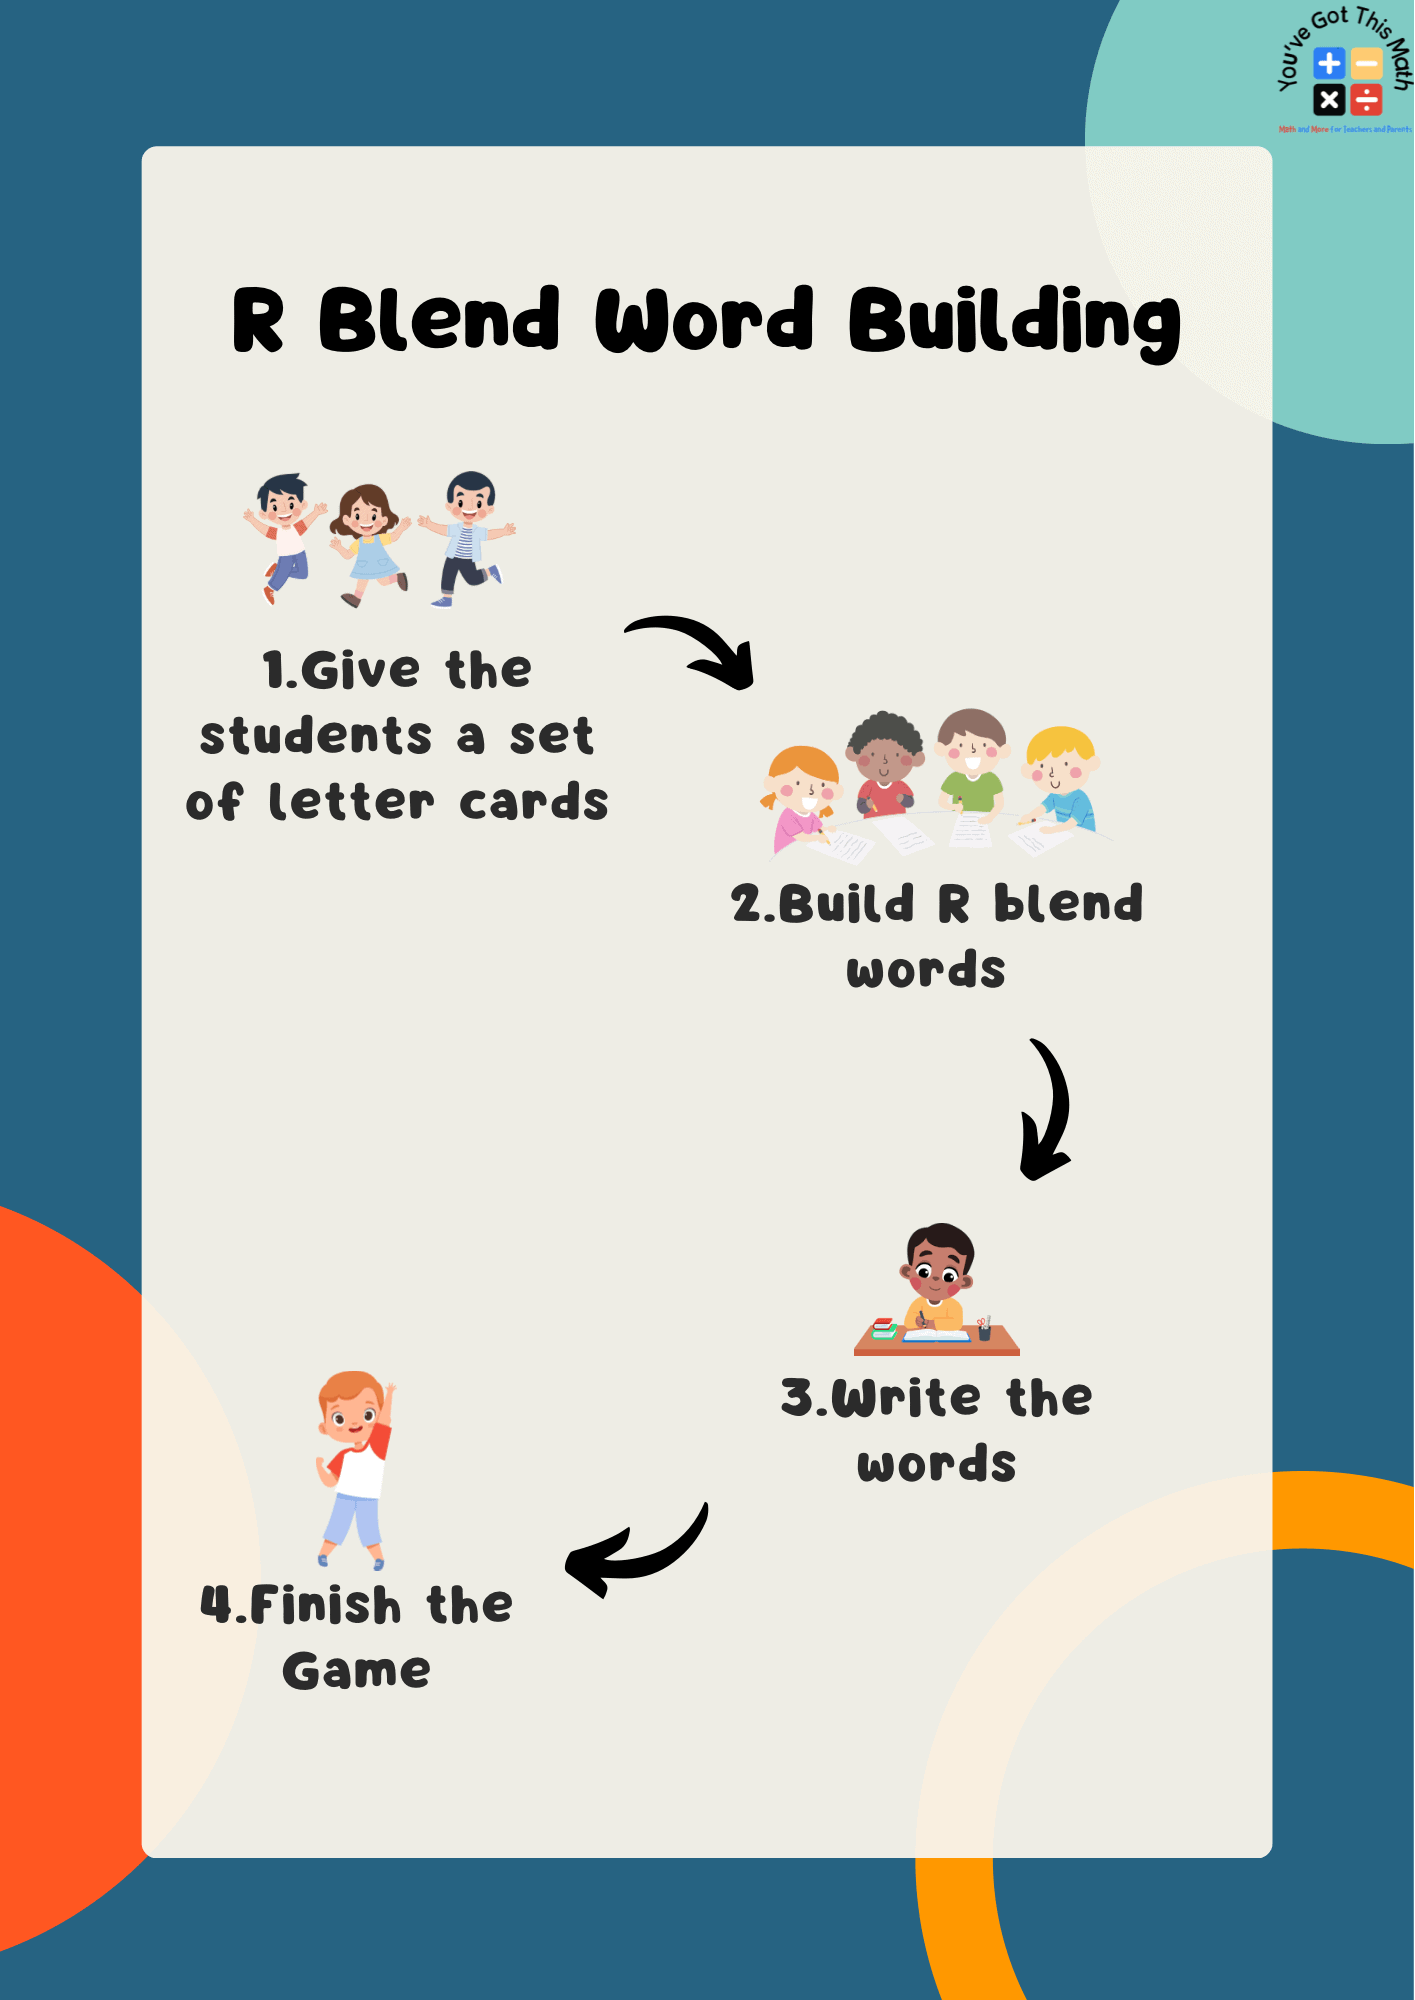 Procedures of R blend words building